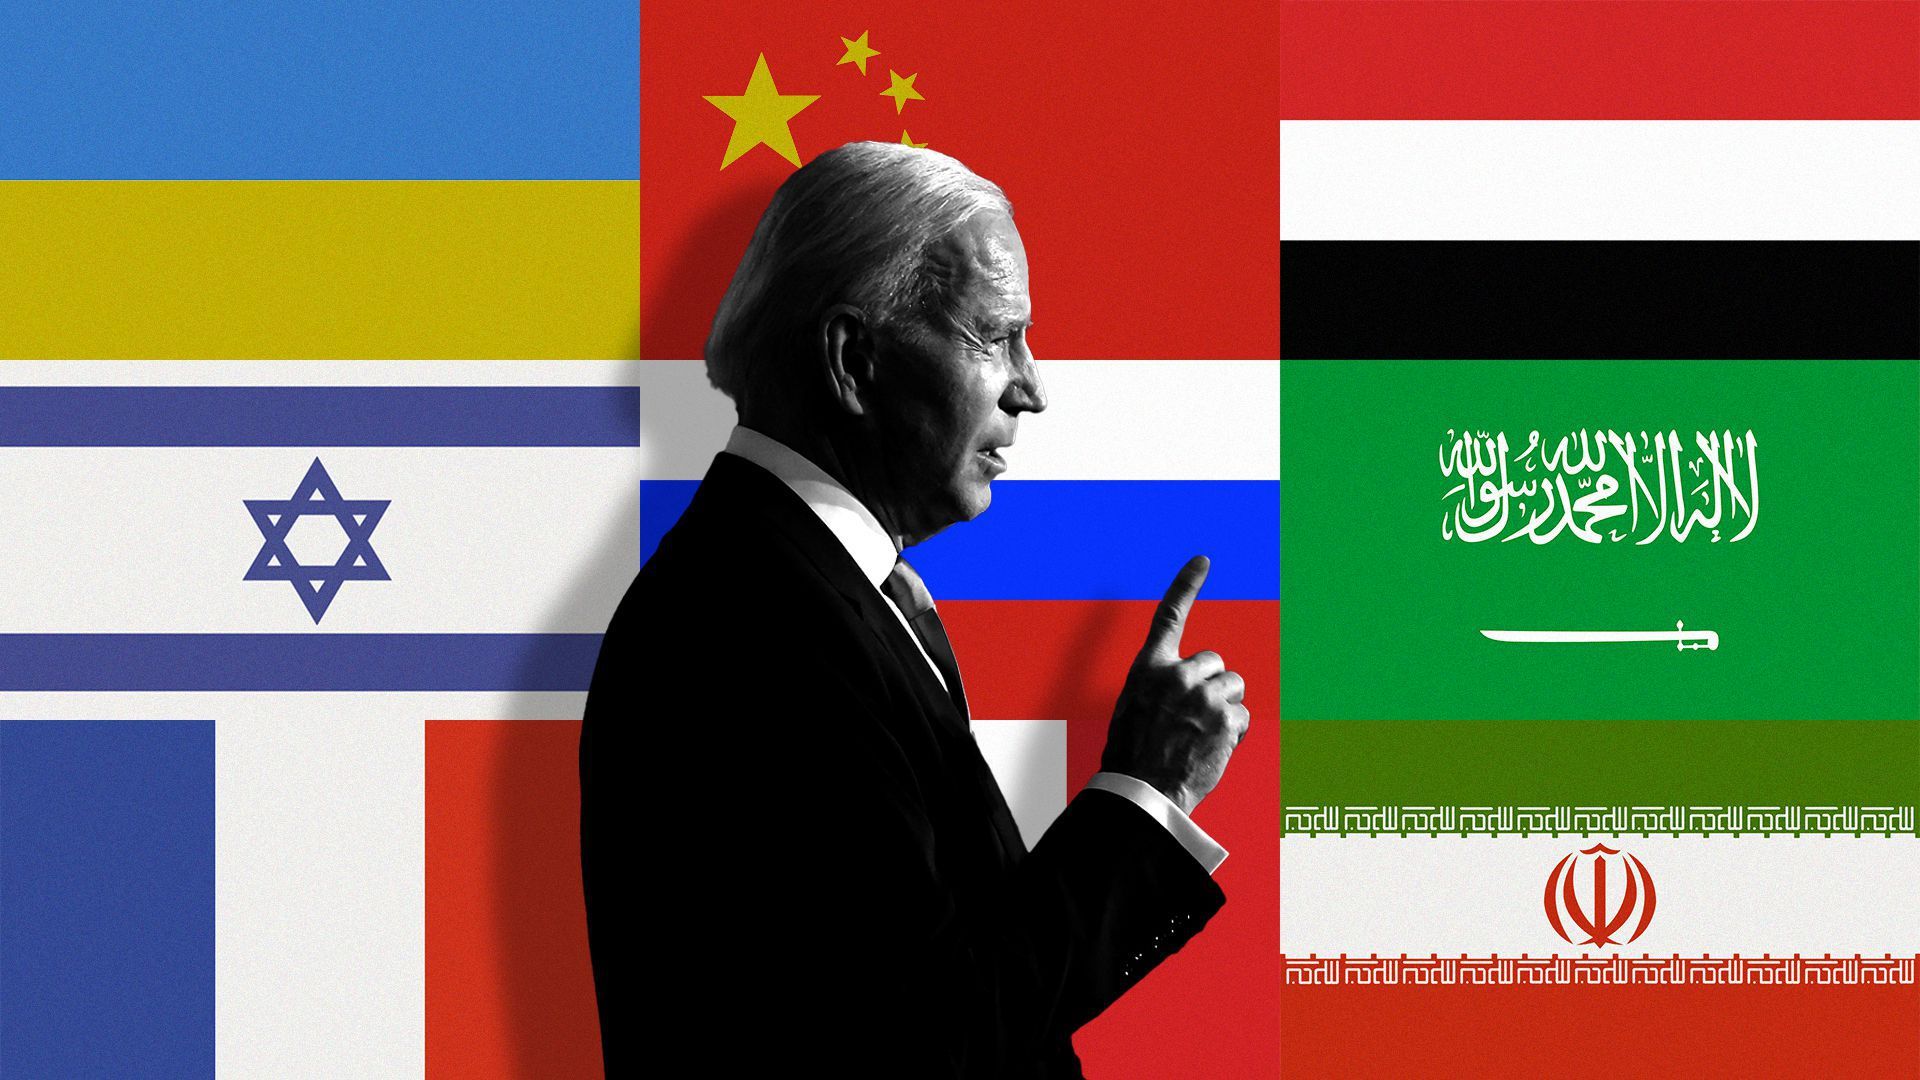 Joe Biden is seen against a backdrop of International flags.